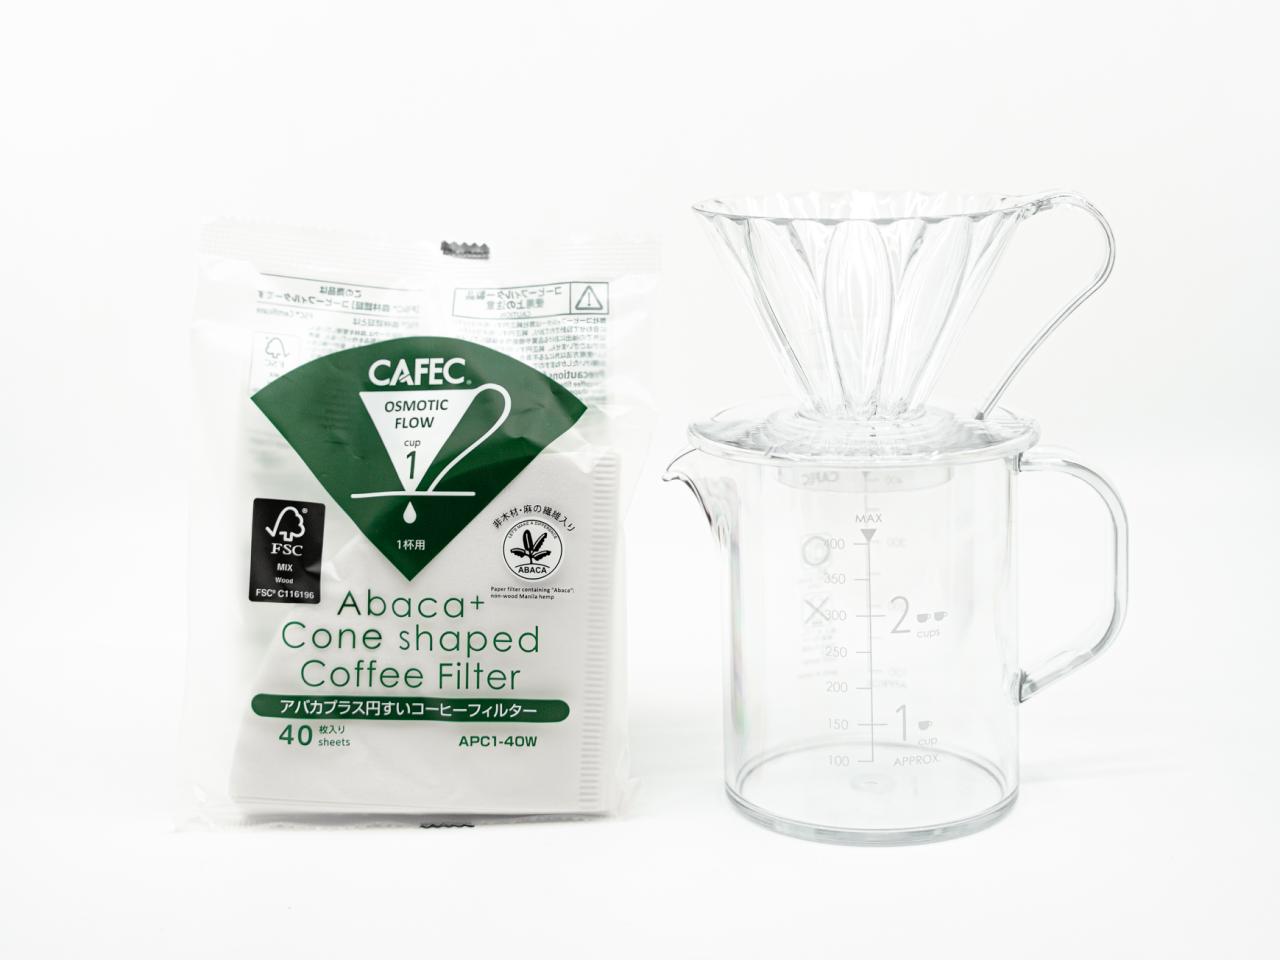 Cafec Starter Kit 1 kopp